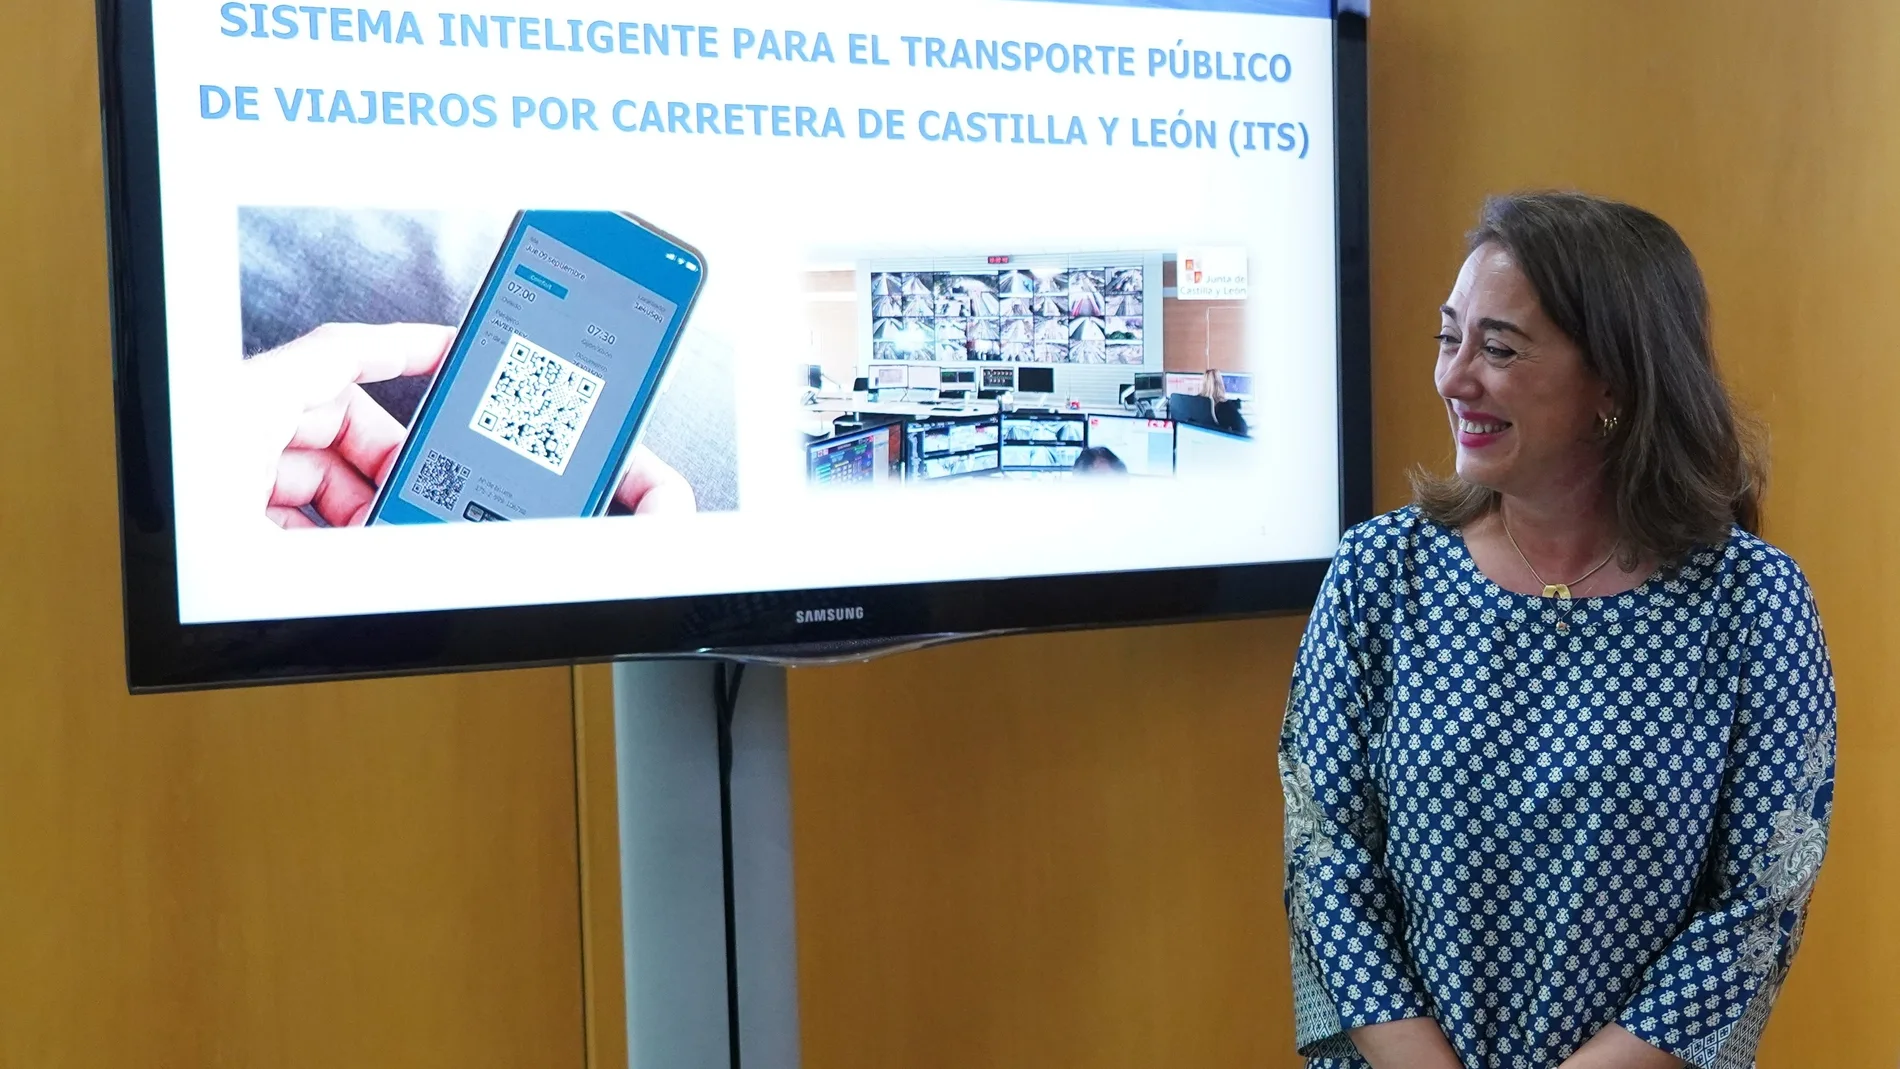 La consejera de Movilidad y Transformación Digital, María González Corral, presenta el nuevo sistema de transporte público de viajeros "inteligente"